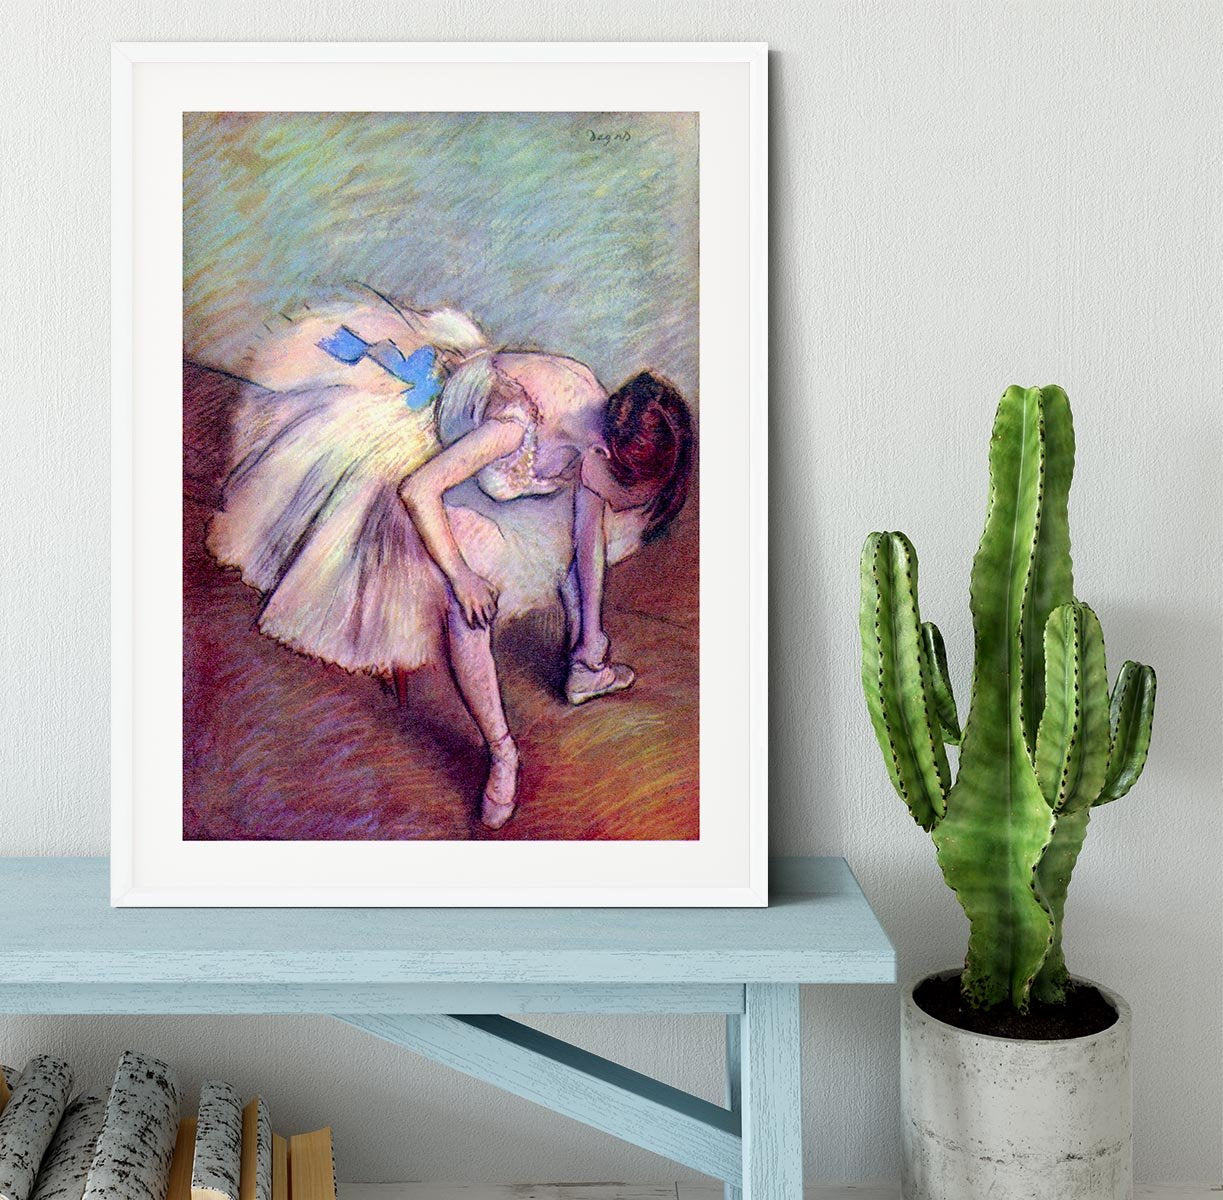 Dancer 2 by Degas Framed Print - Canvas Art Rocks - 5